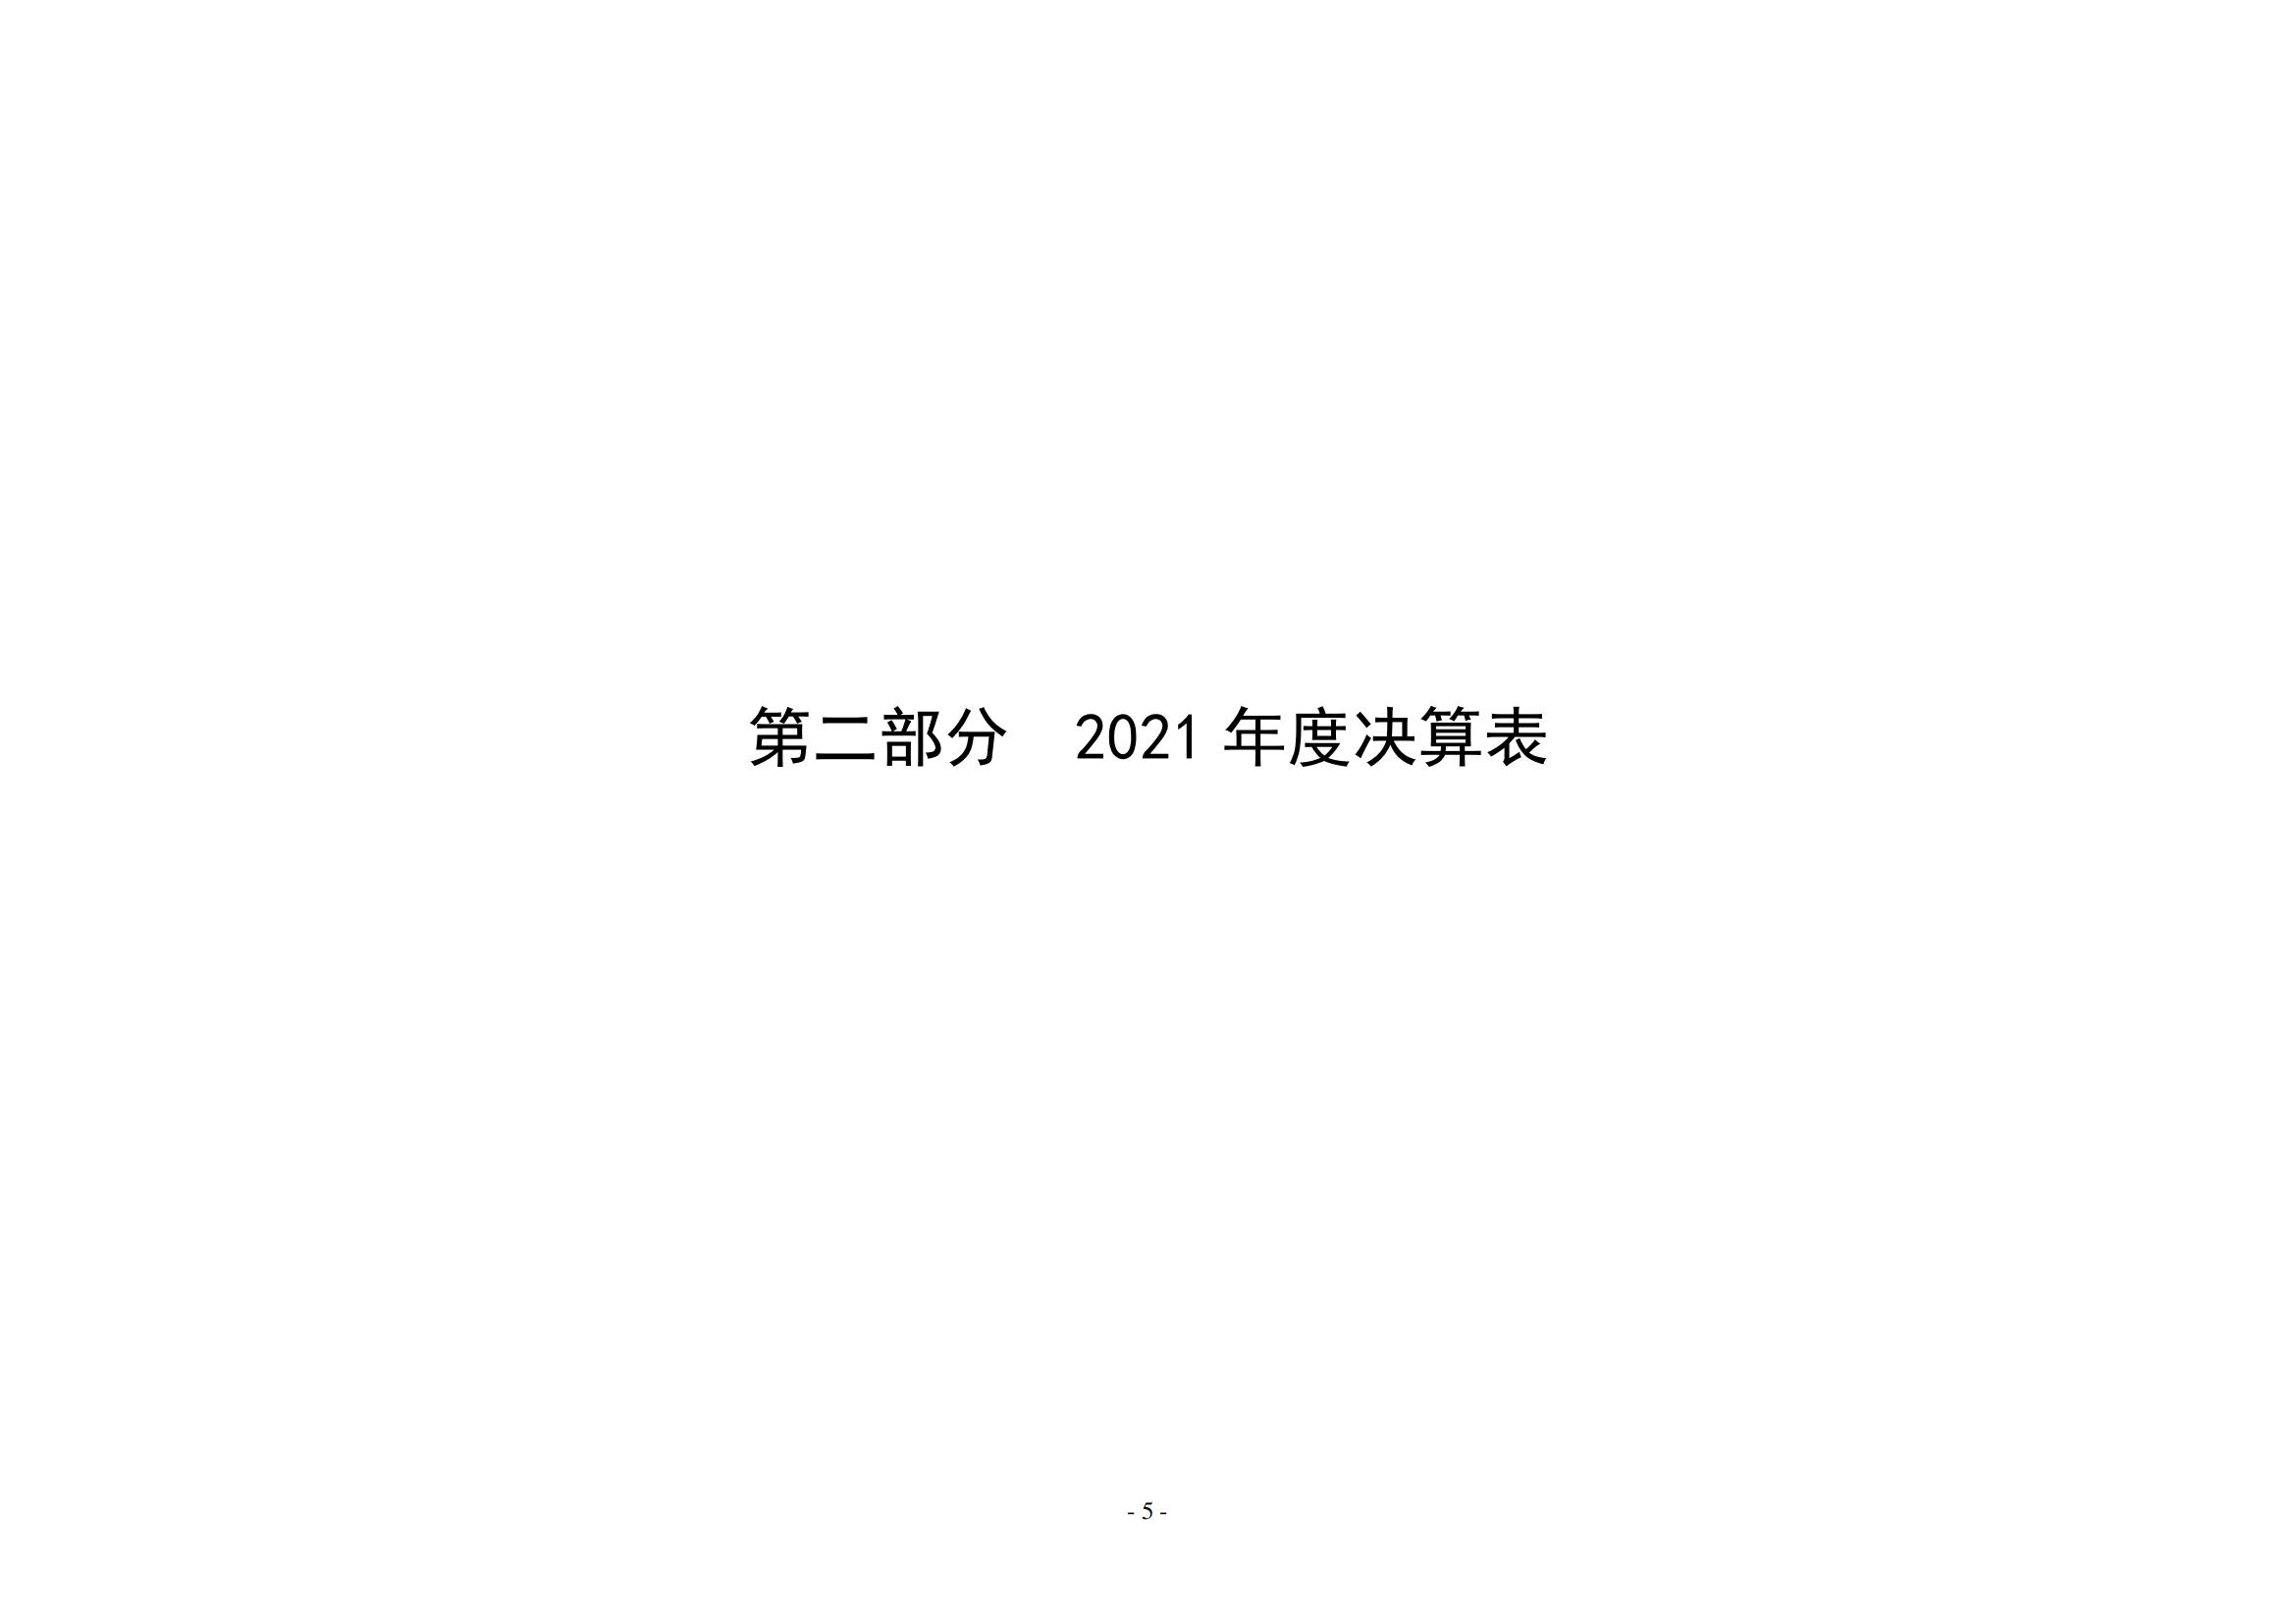 2021年度新乡市老干部活动中心决算公开说明_04